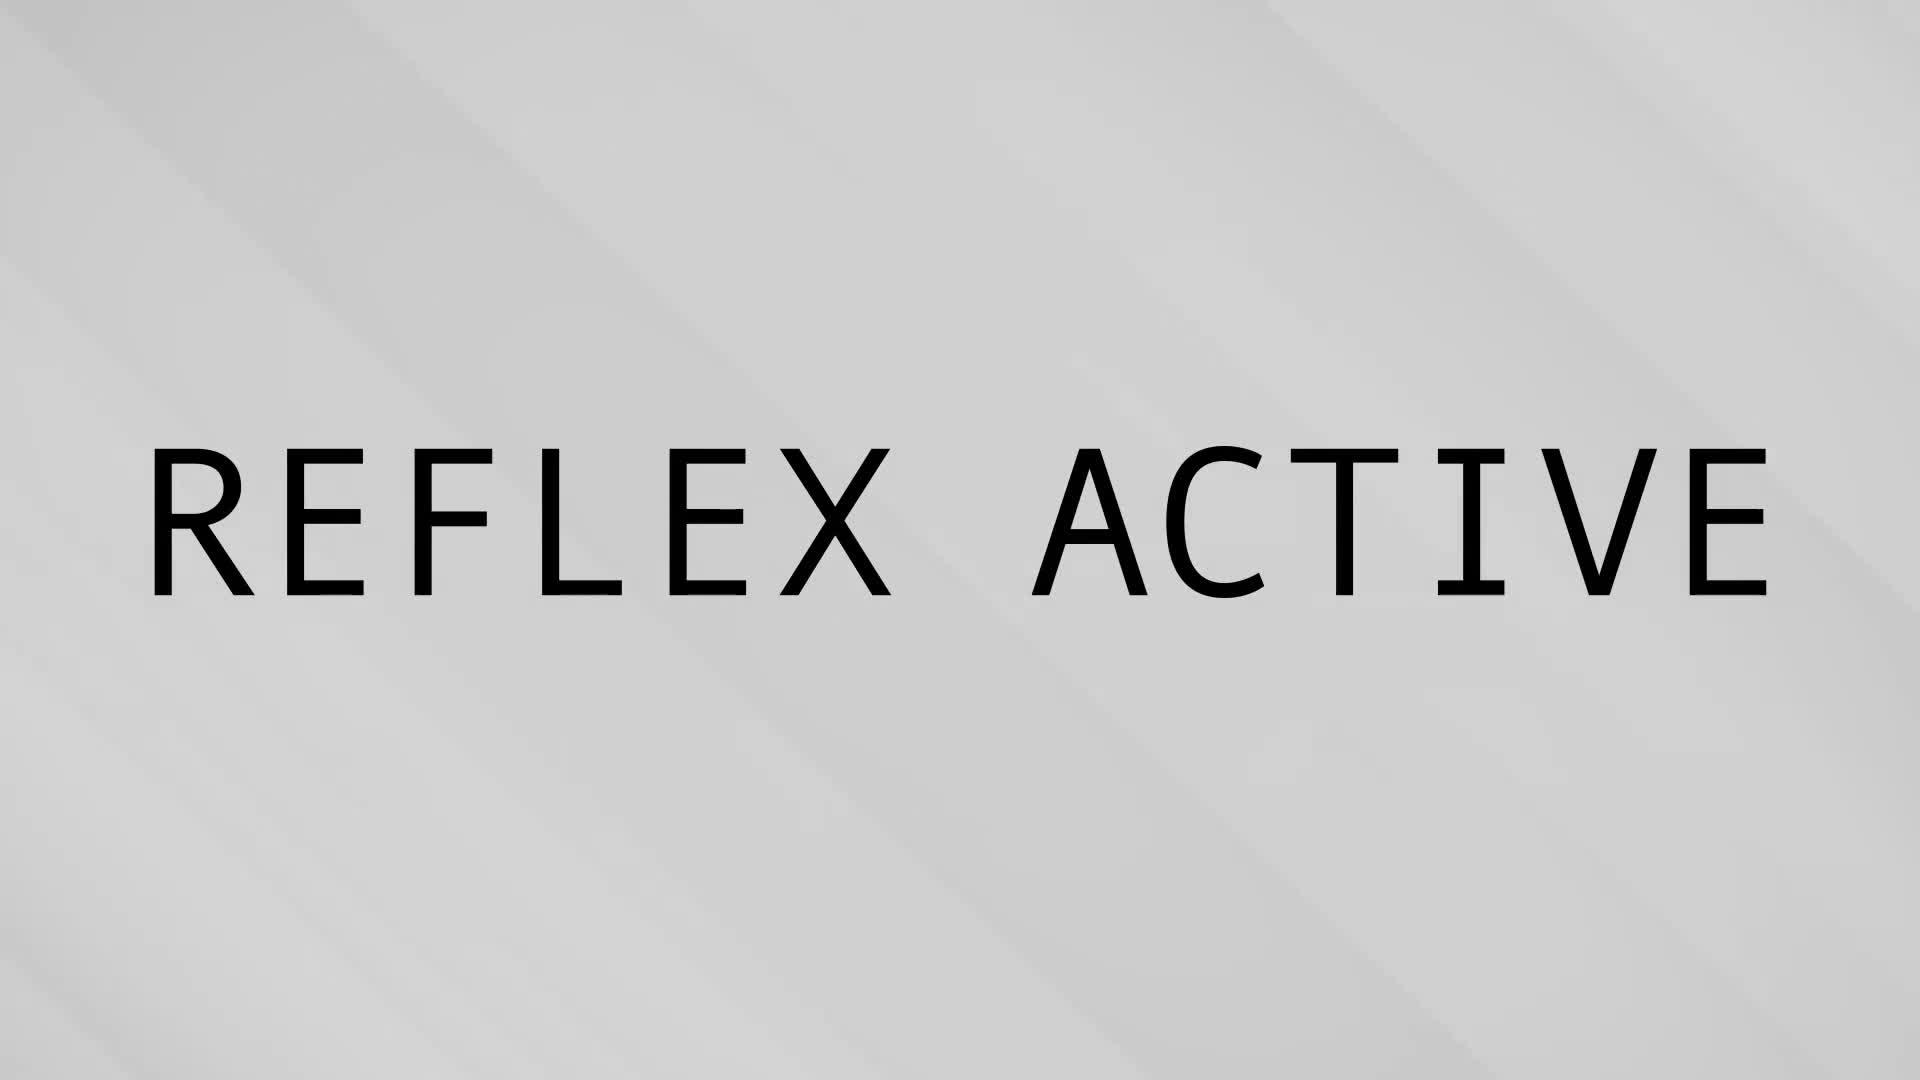 Reflex Active